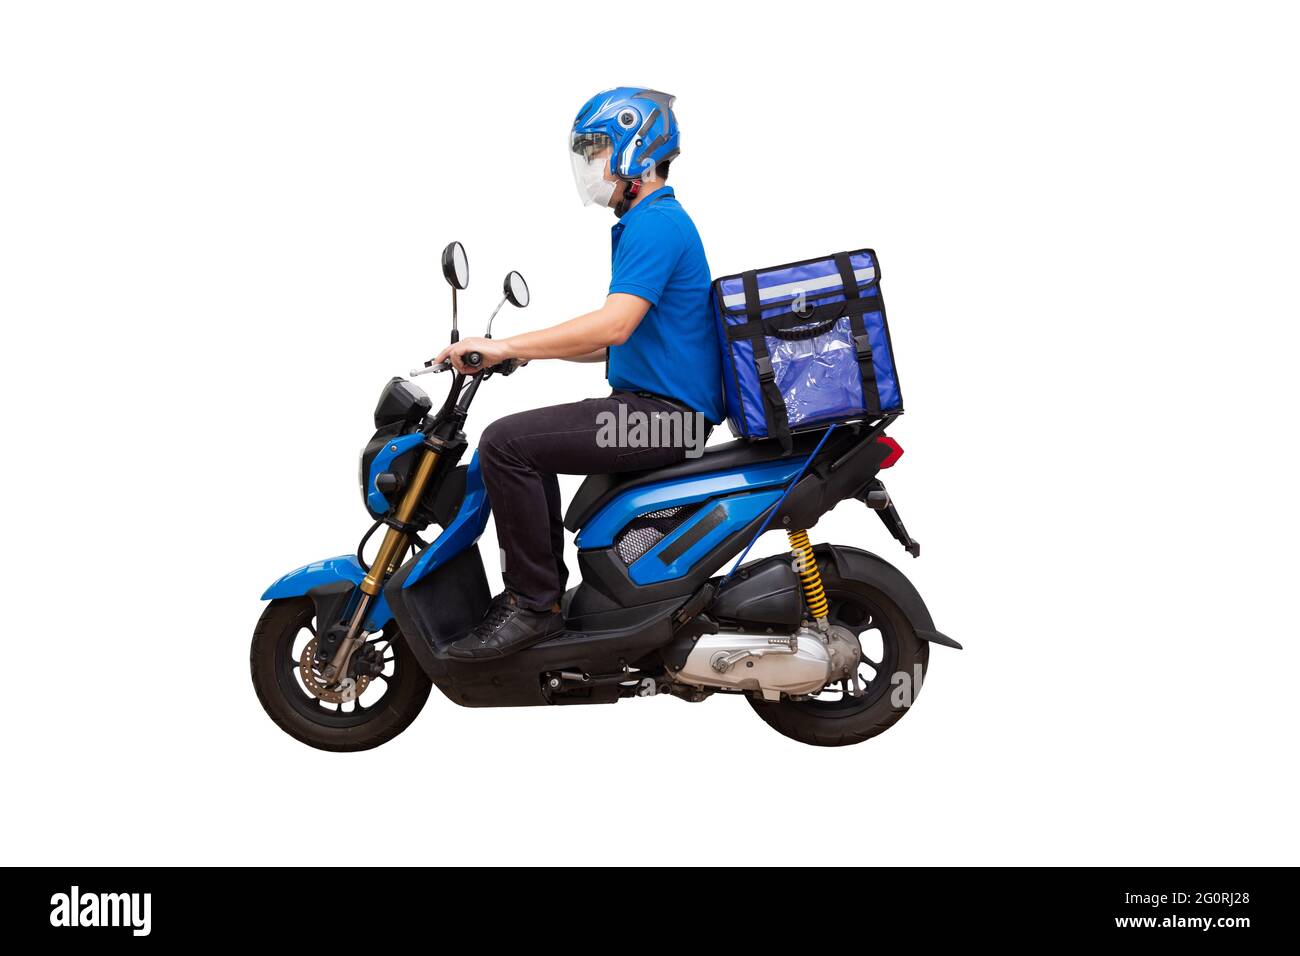 Le liveur porte une moto bleue uniforme et une boîte de livraison. Moto fournissant la nourriture ou le service express colis isolé sur fond blanc Banque D'Images